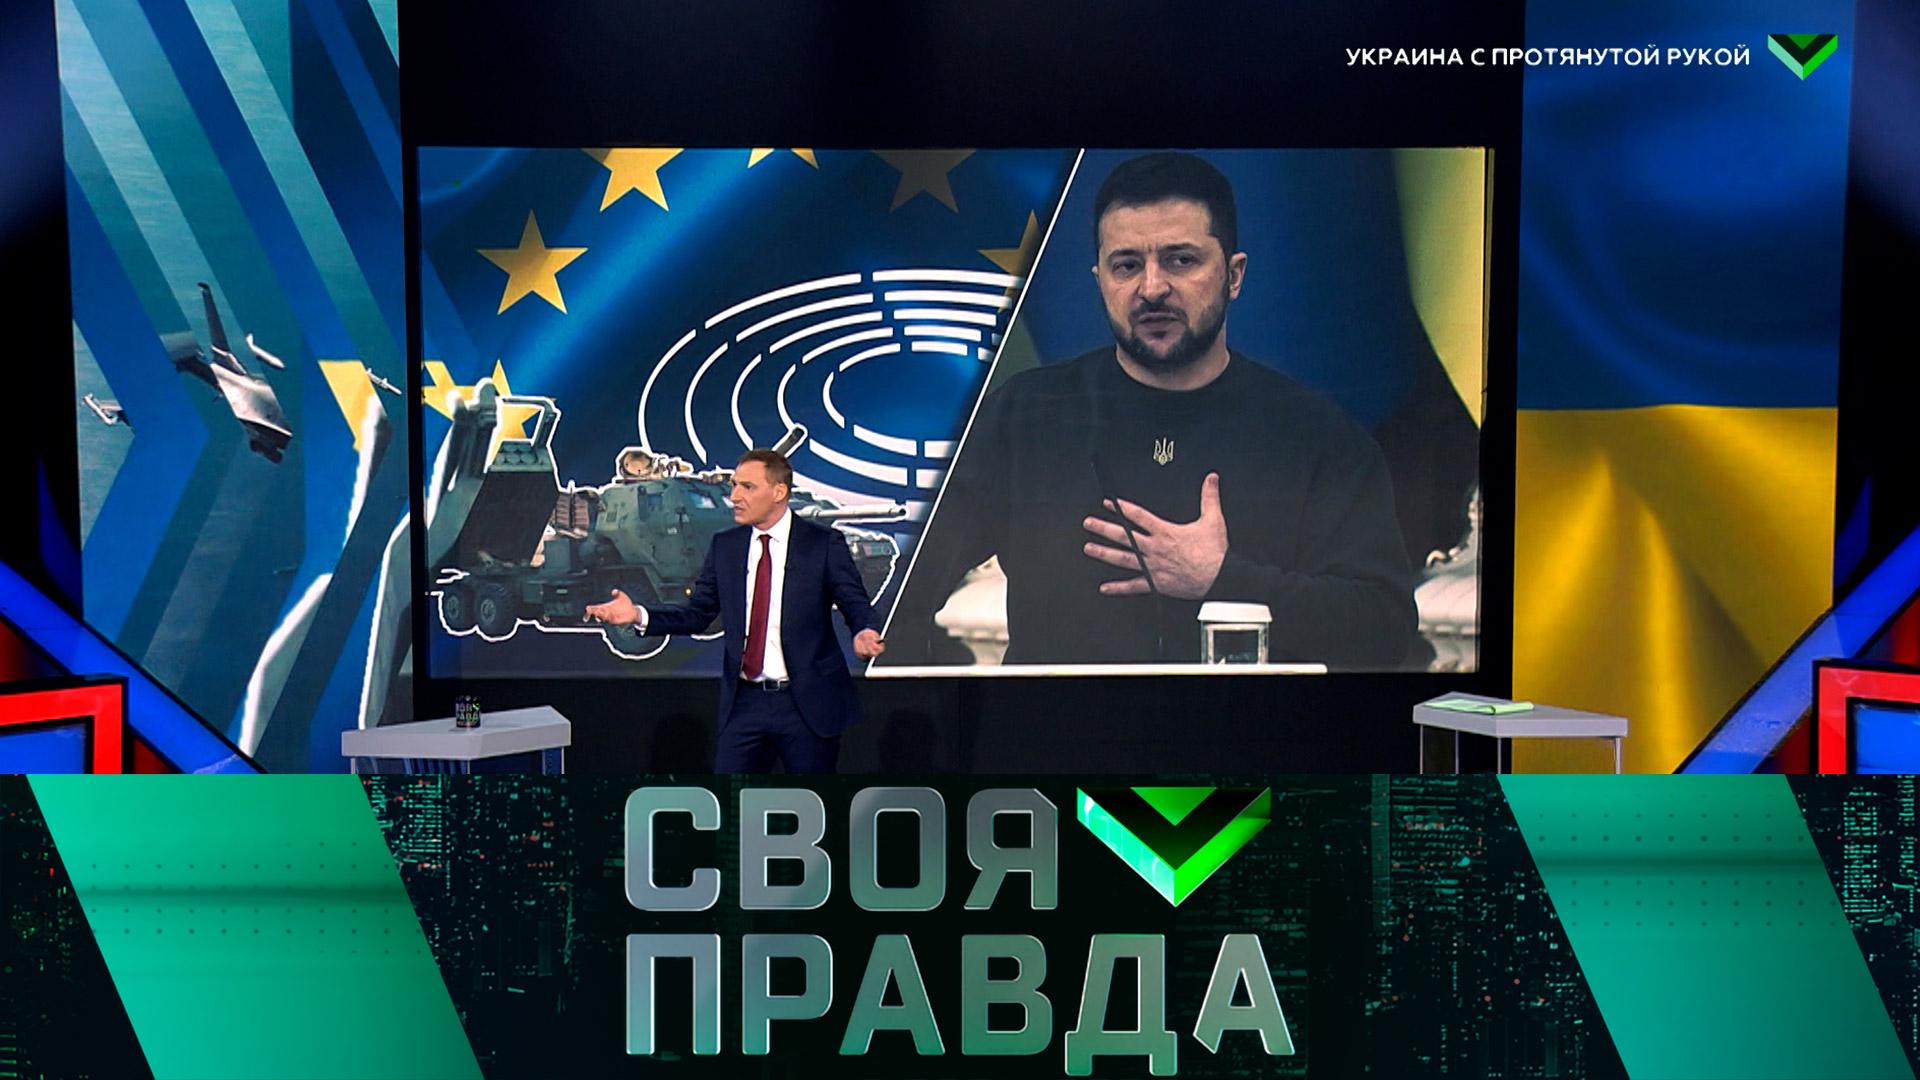 «Своя правда»: Украина с протянутой рукой | Выпуск от 10 февраля 2023 года